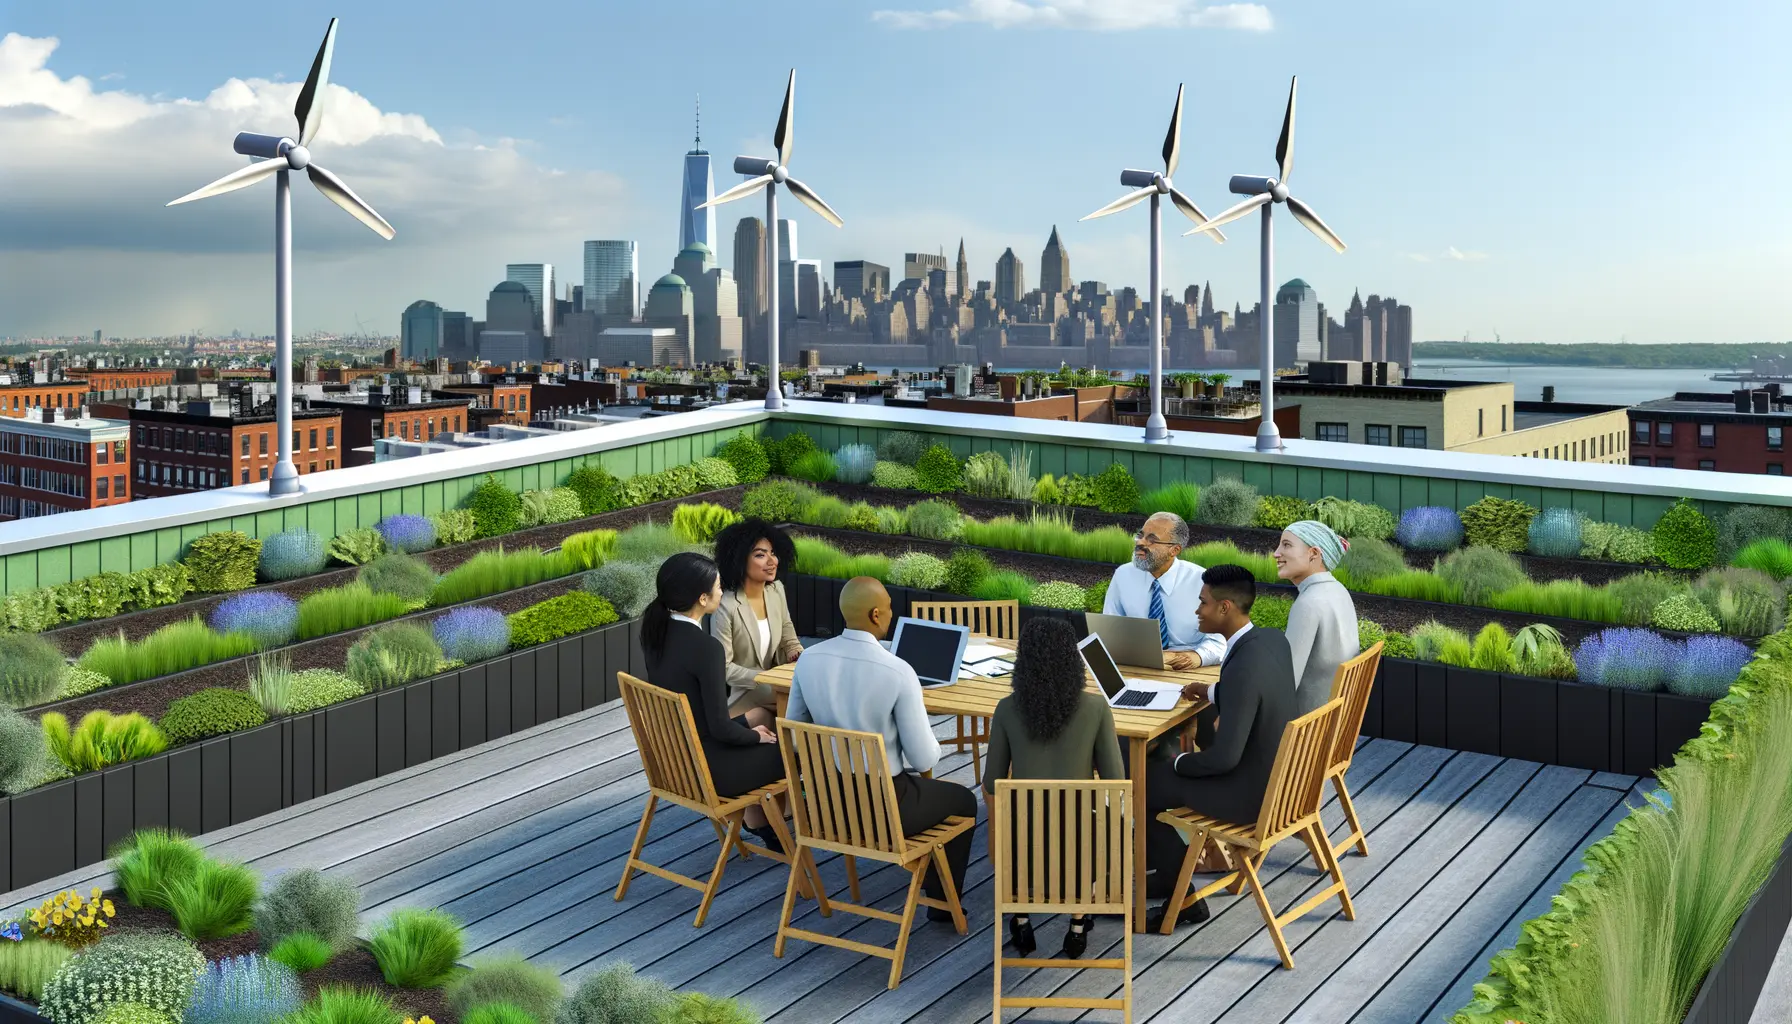 Illustration eines urbanen Dachgartens als Symbol für nachhaltige Stadtentwicklung